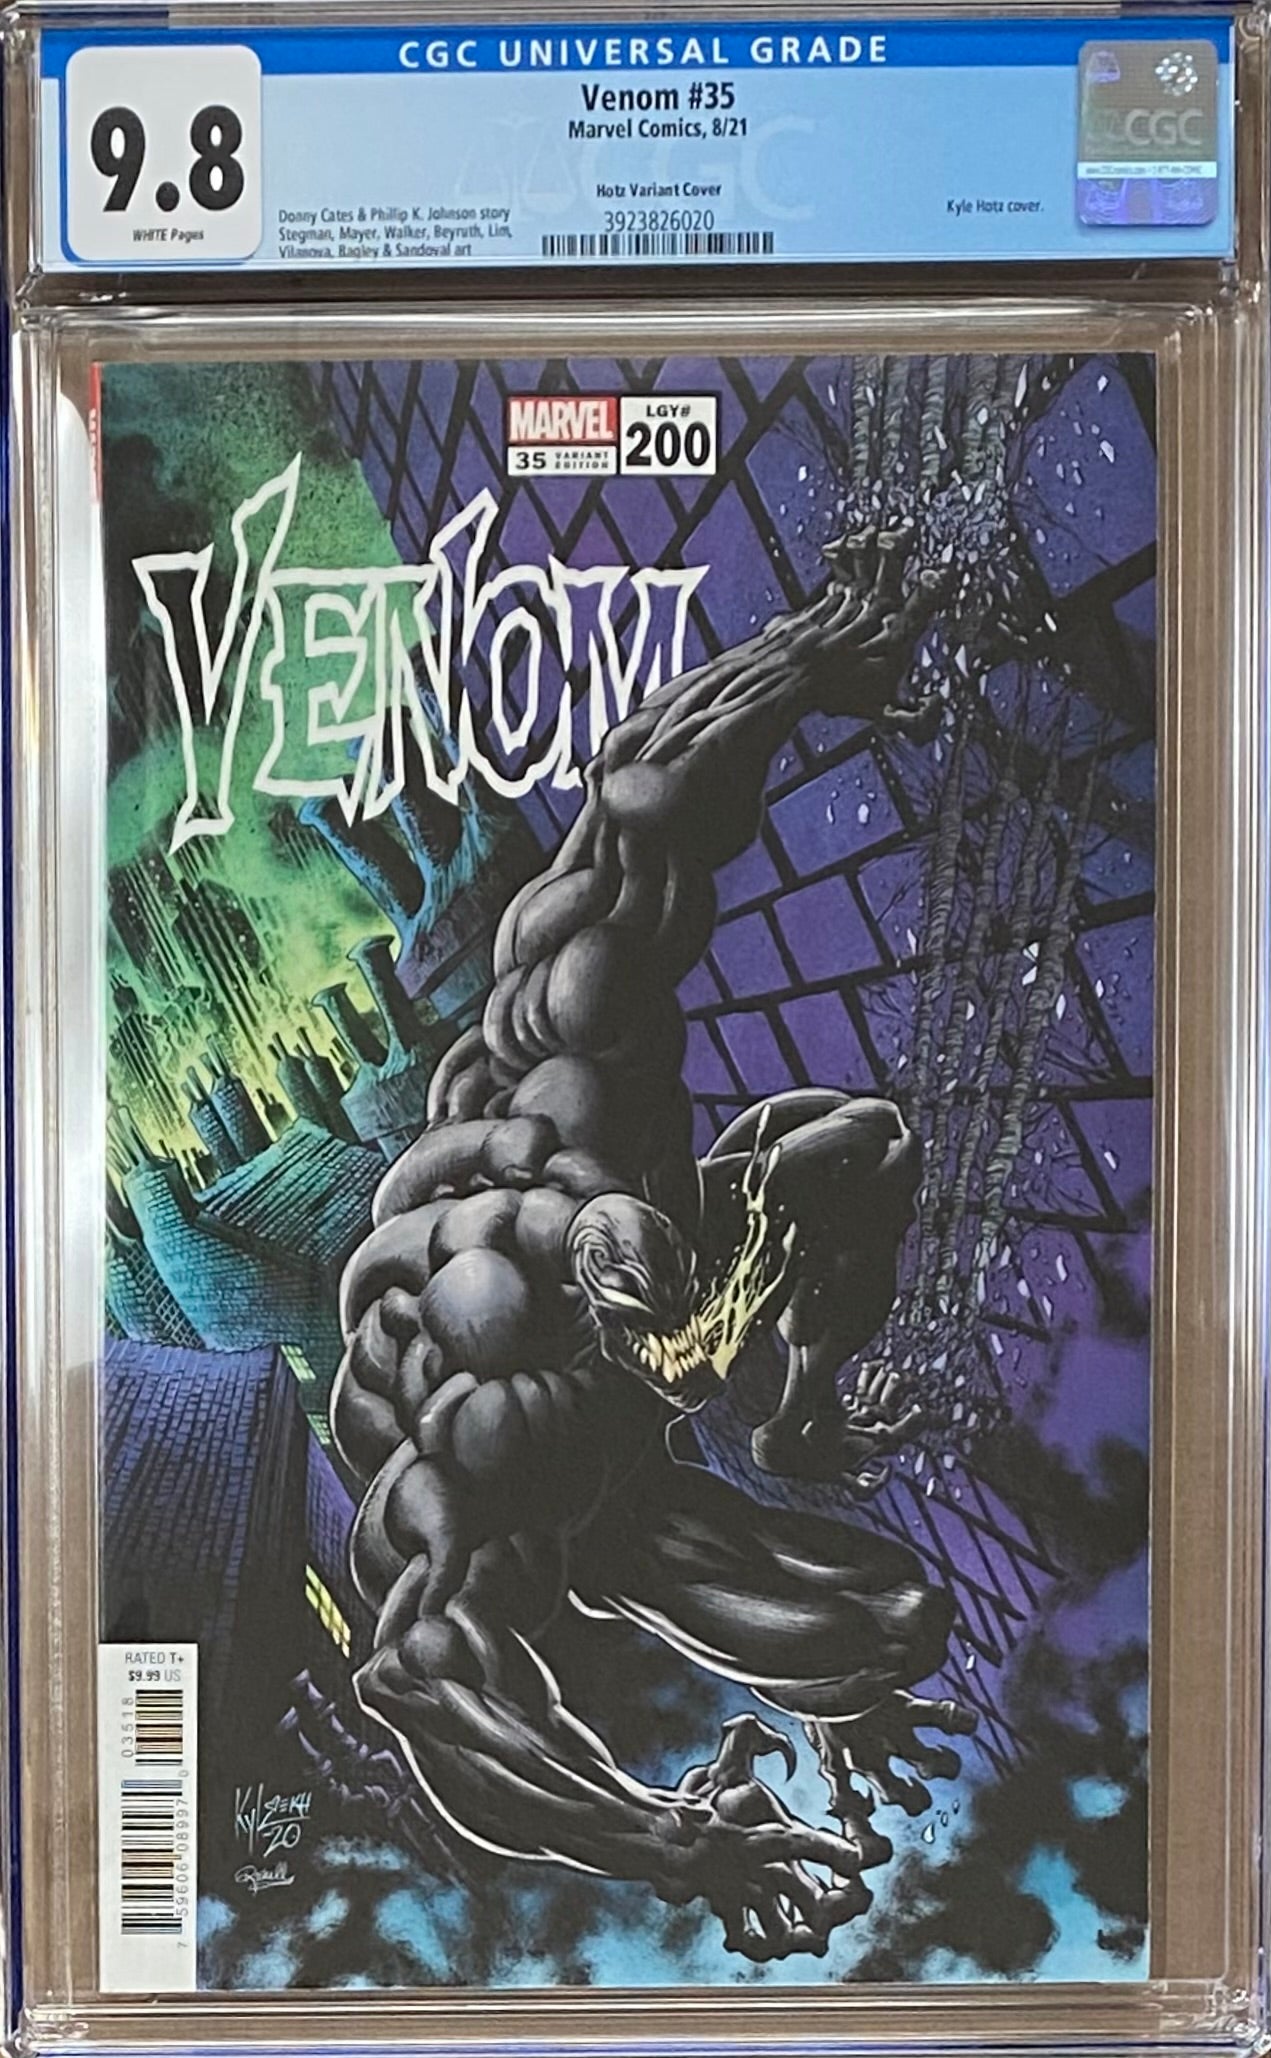 Venom #35 (#200) Hans Variant CGC 9.8